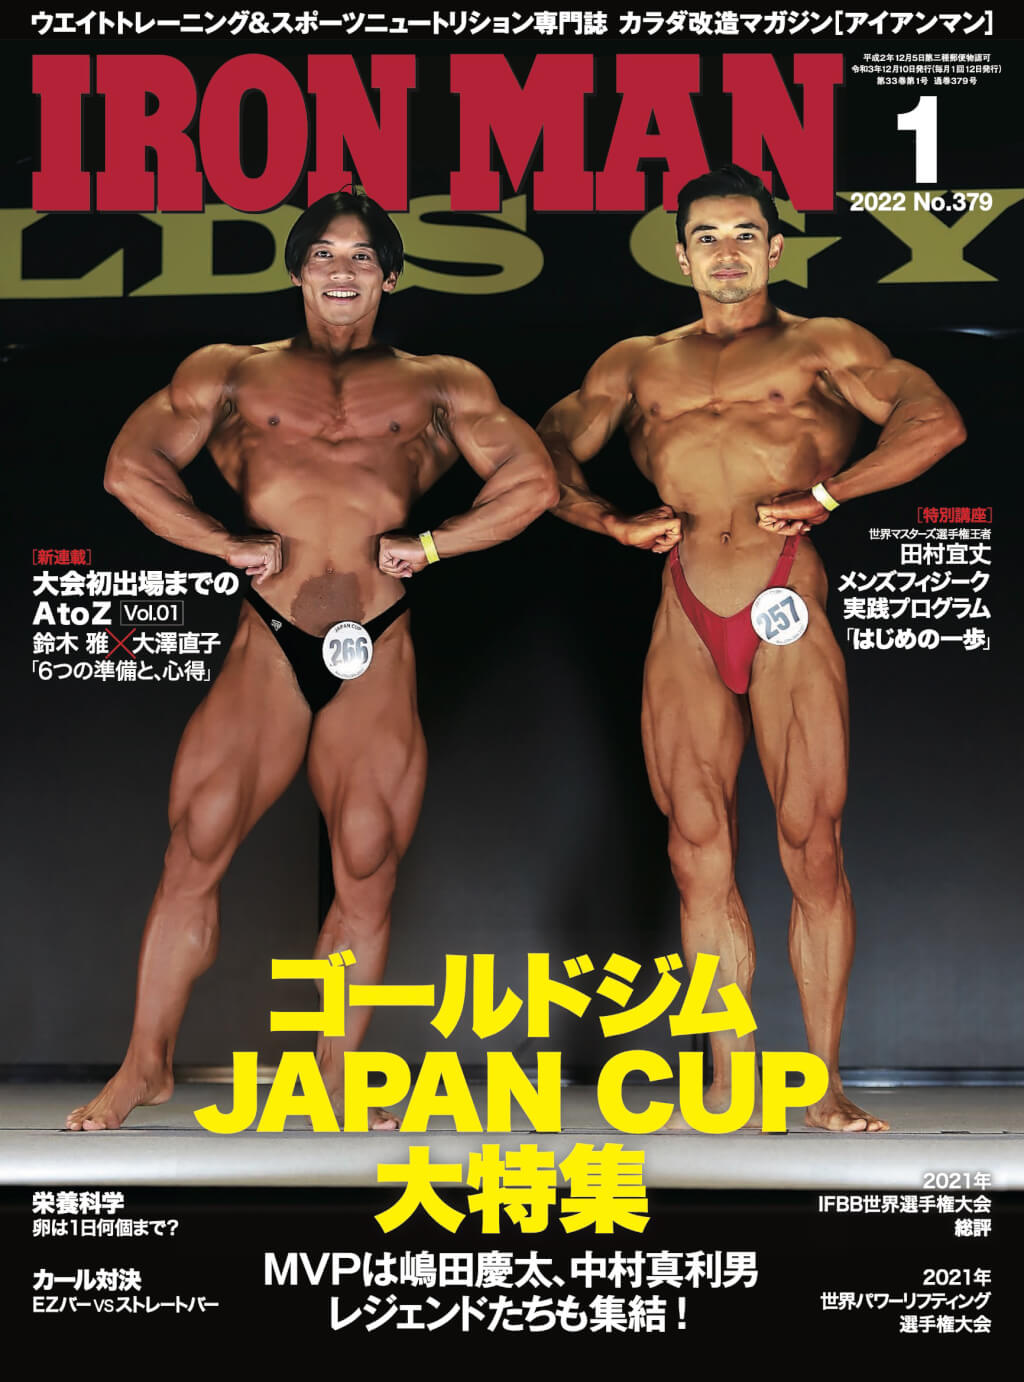 田村選手がメンズフィジークで勝つための身体の作りかたを紹介しているIRONMAN1月号